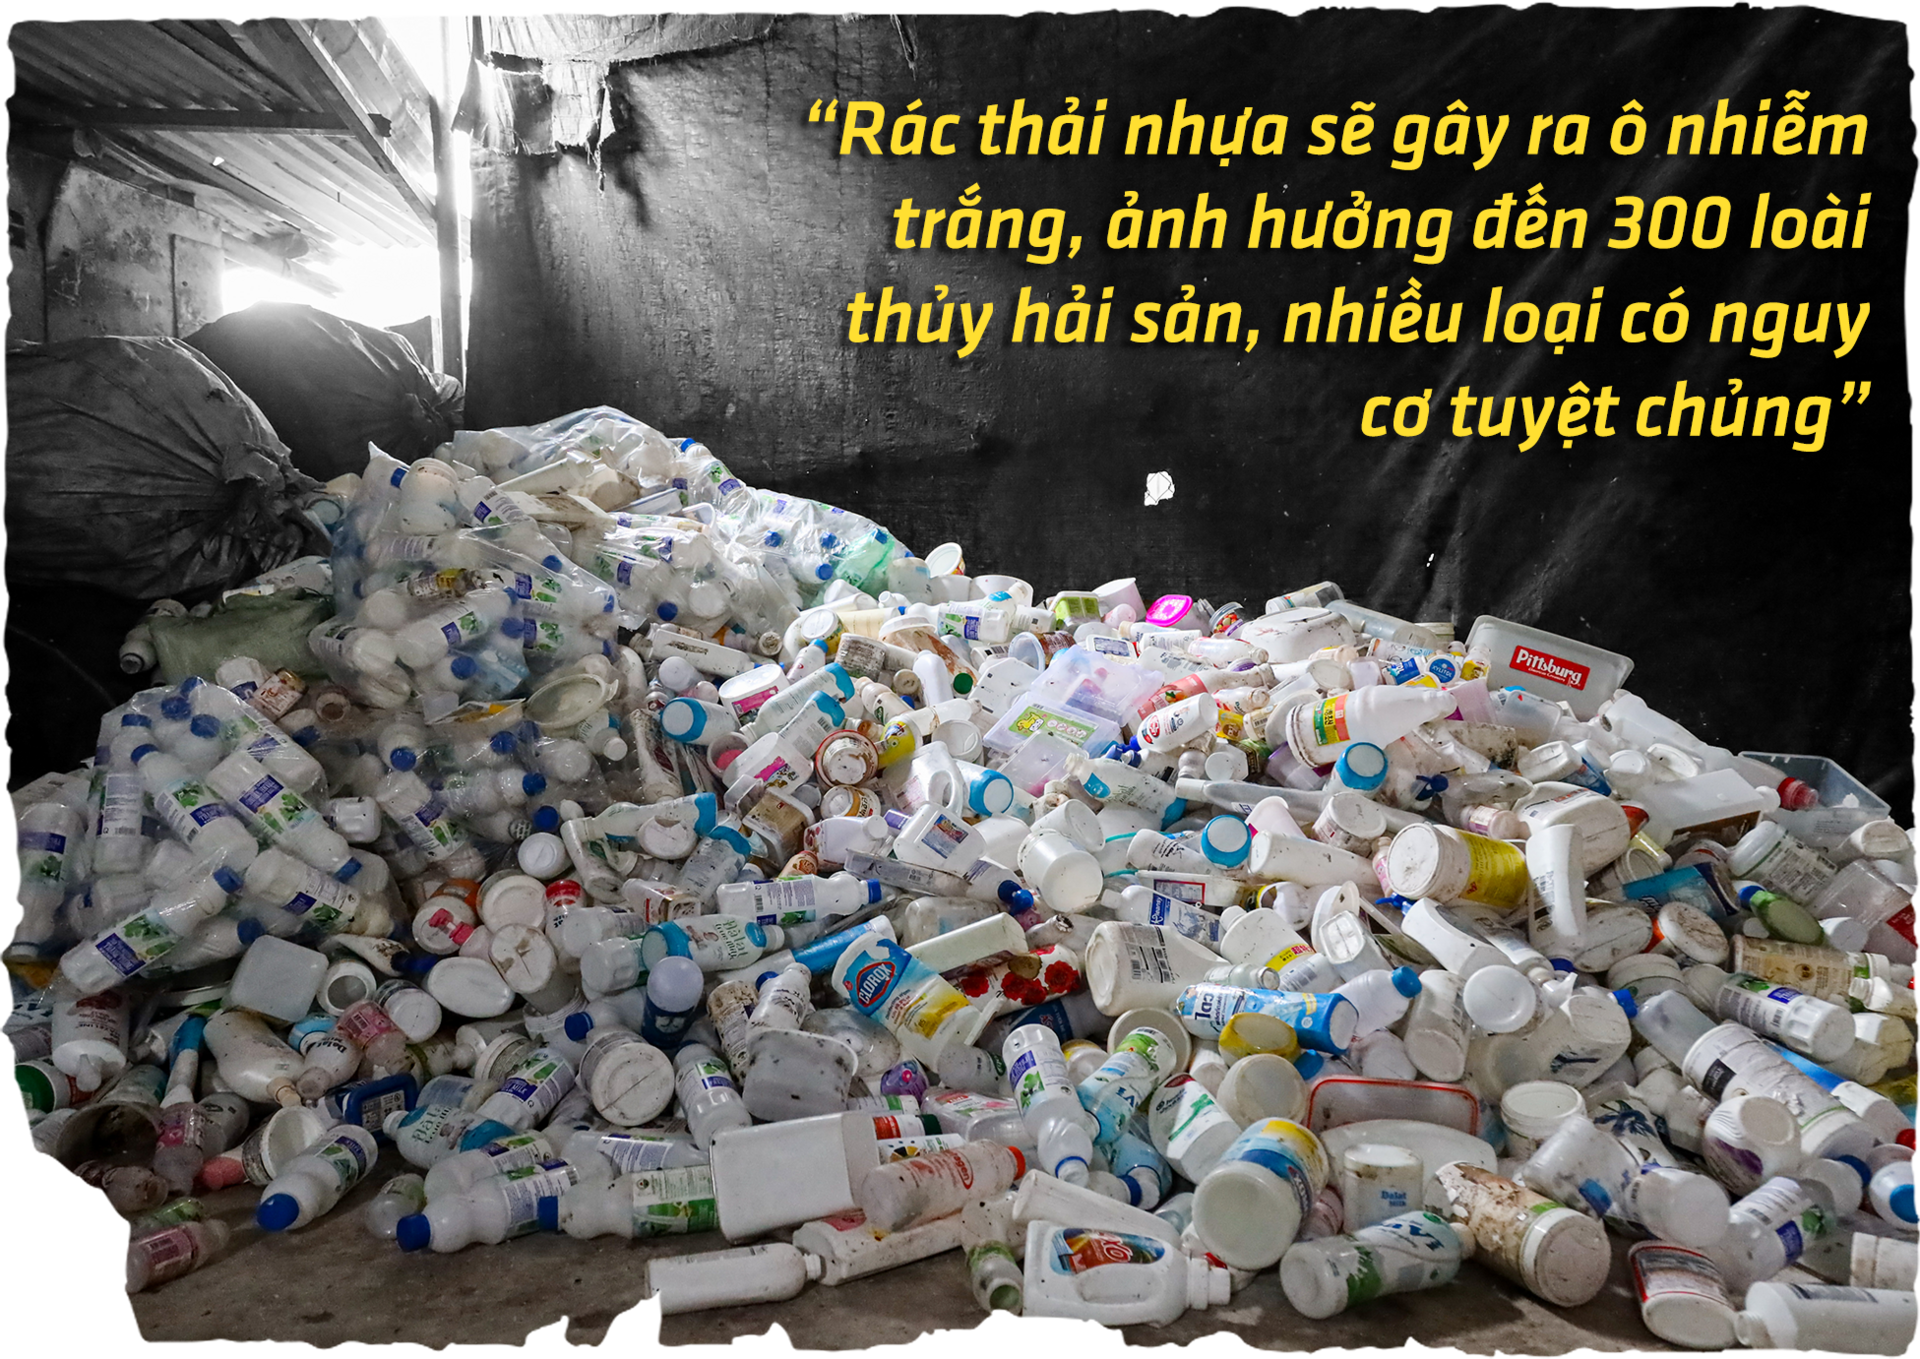 Chai nhựa, túi nylon đang hủy diệt môi trường Việt Nam ra sao? - 6